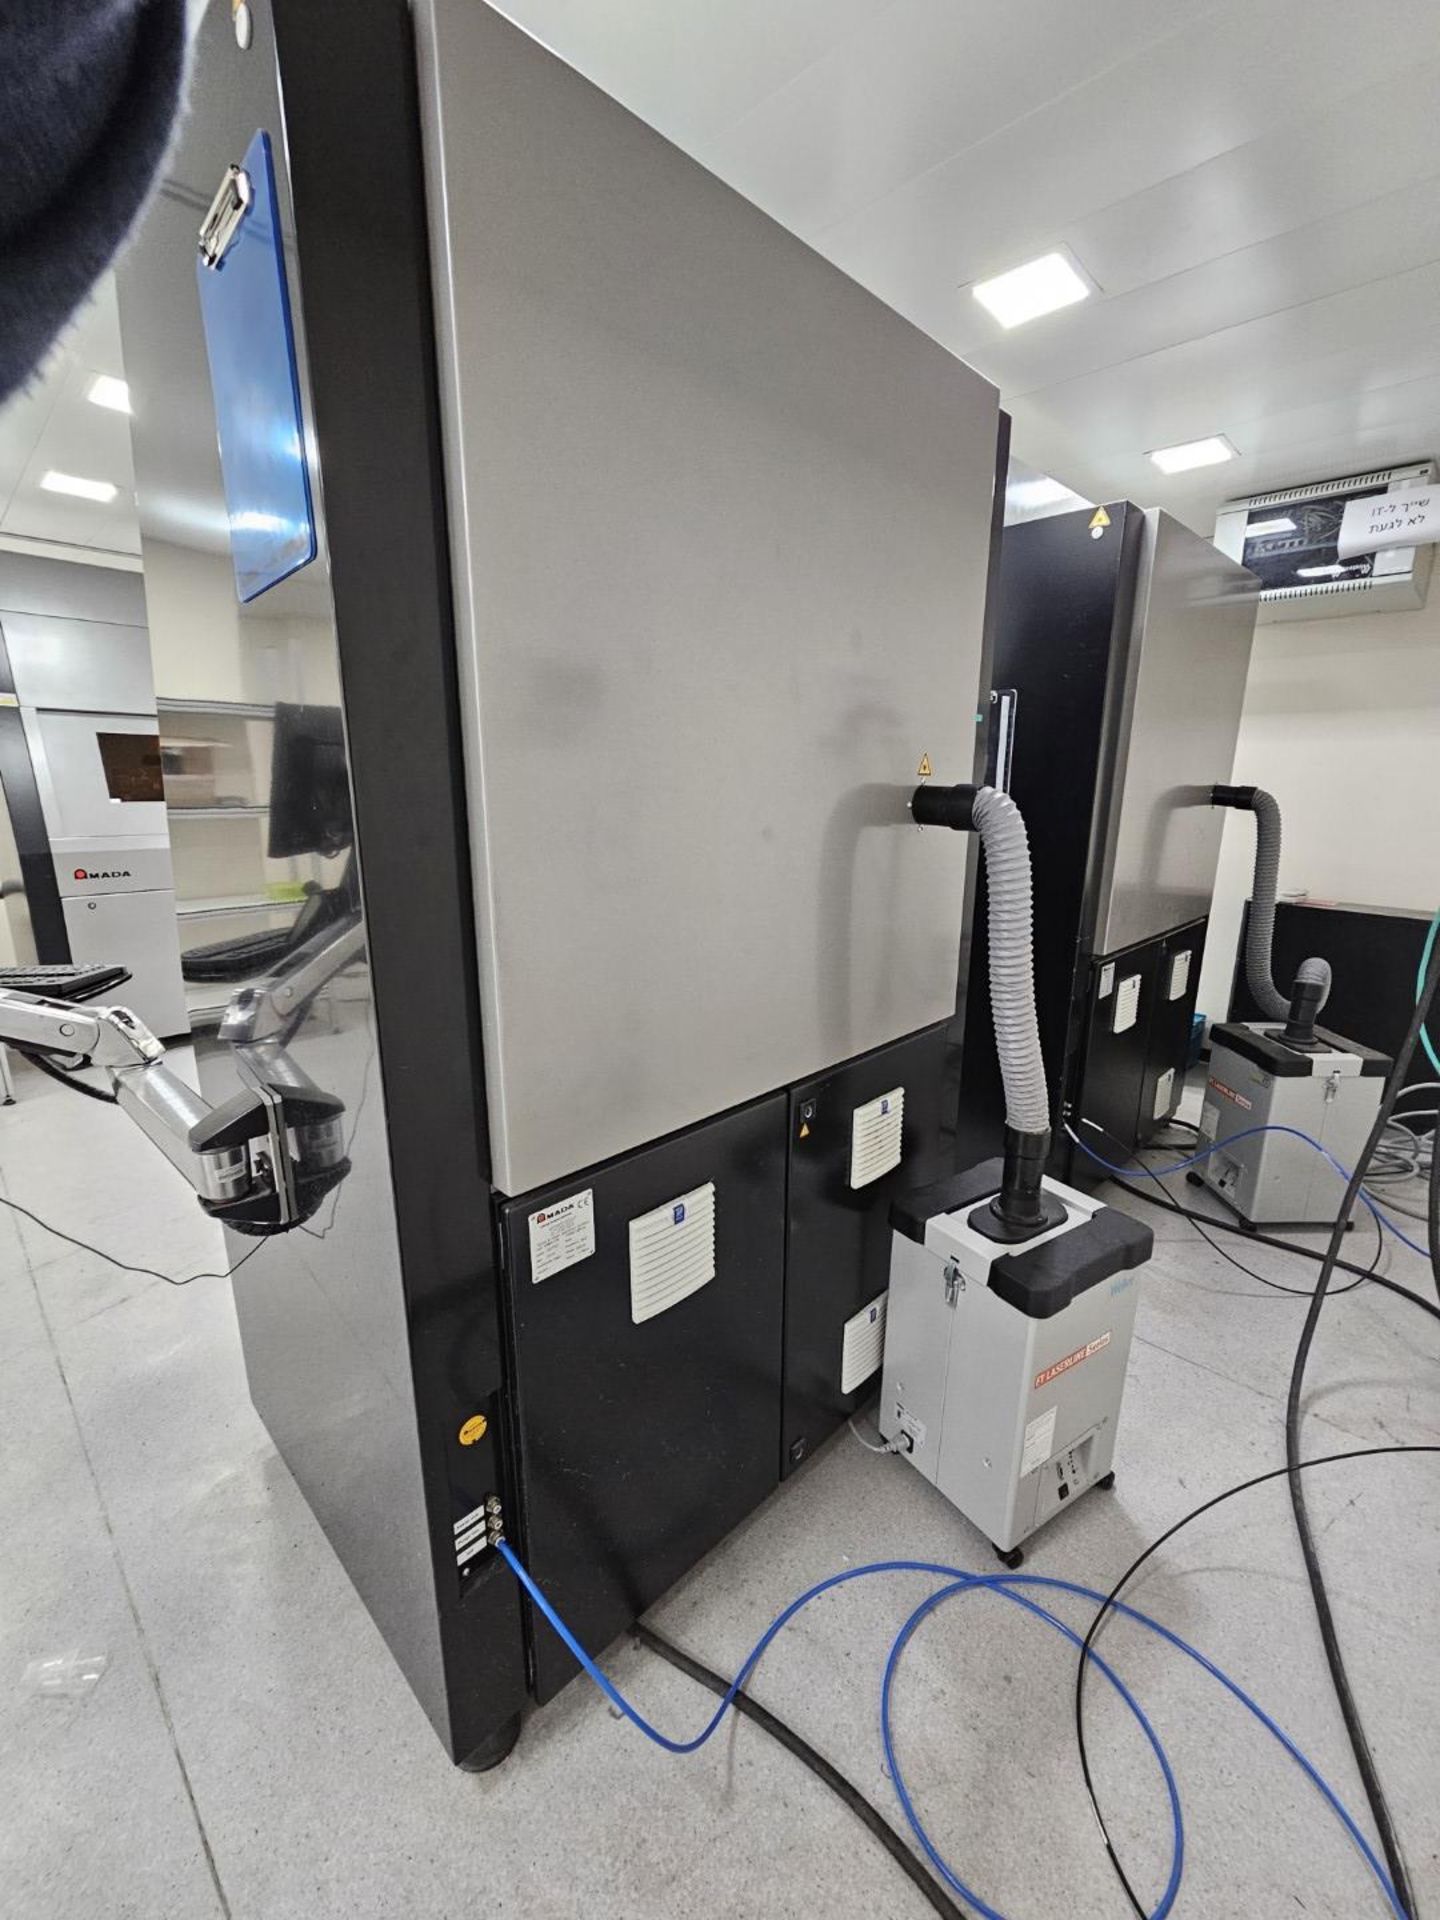 1 x Amada Miyachi Nova 6 Laser CNC Welding Workstation System - Type: 68M0106 - Year: 2019 - Image 6 of 17